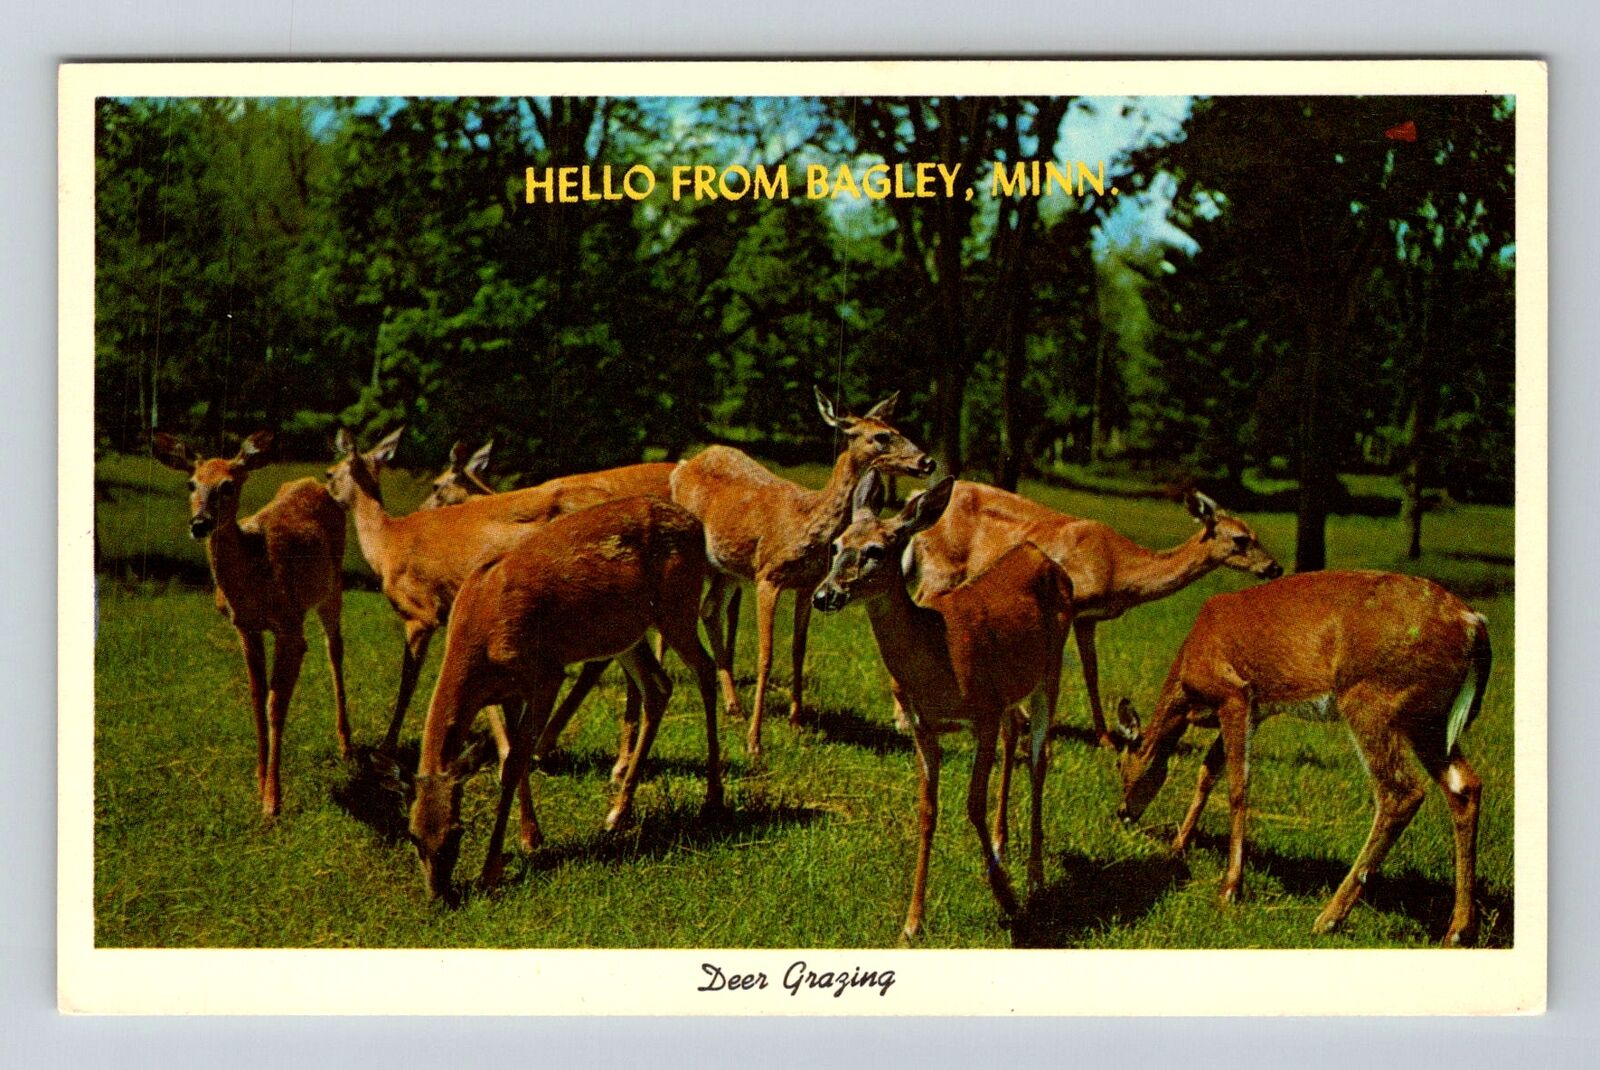 Bagley MN-Minnesota, General Greetings, Deer Grazing, Vintage Postcard